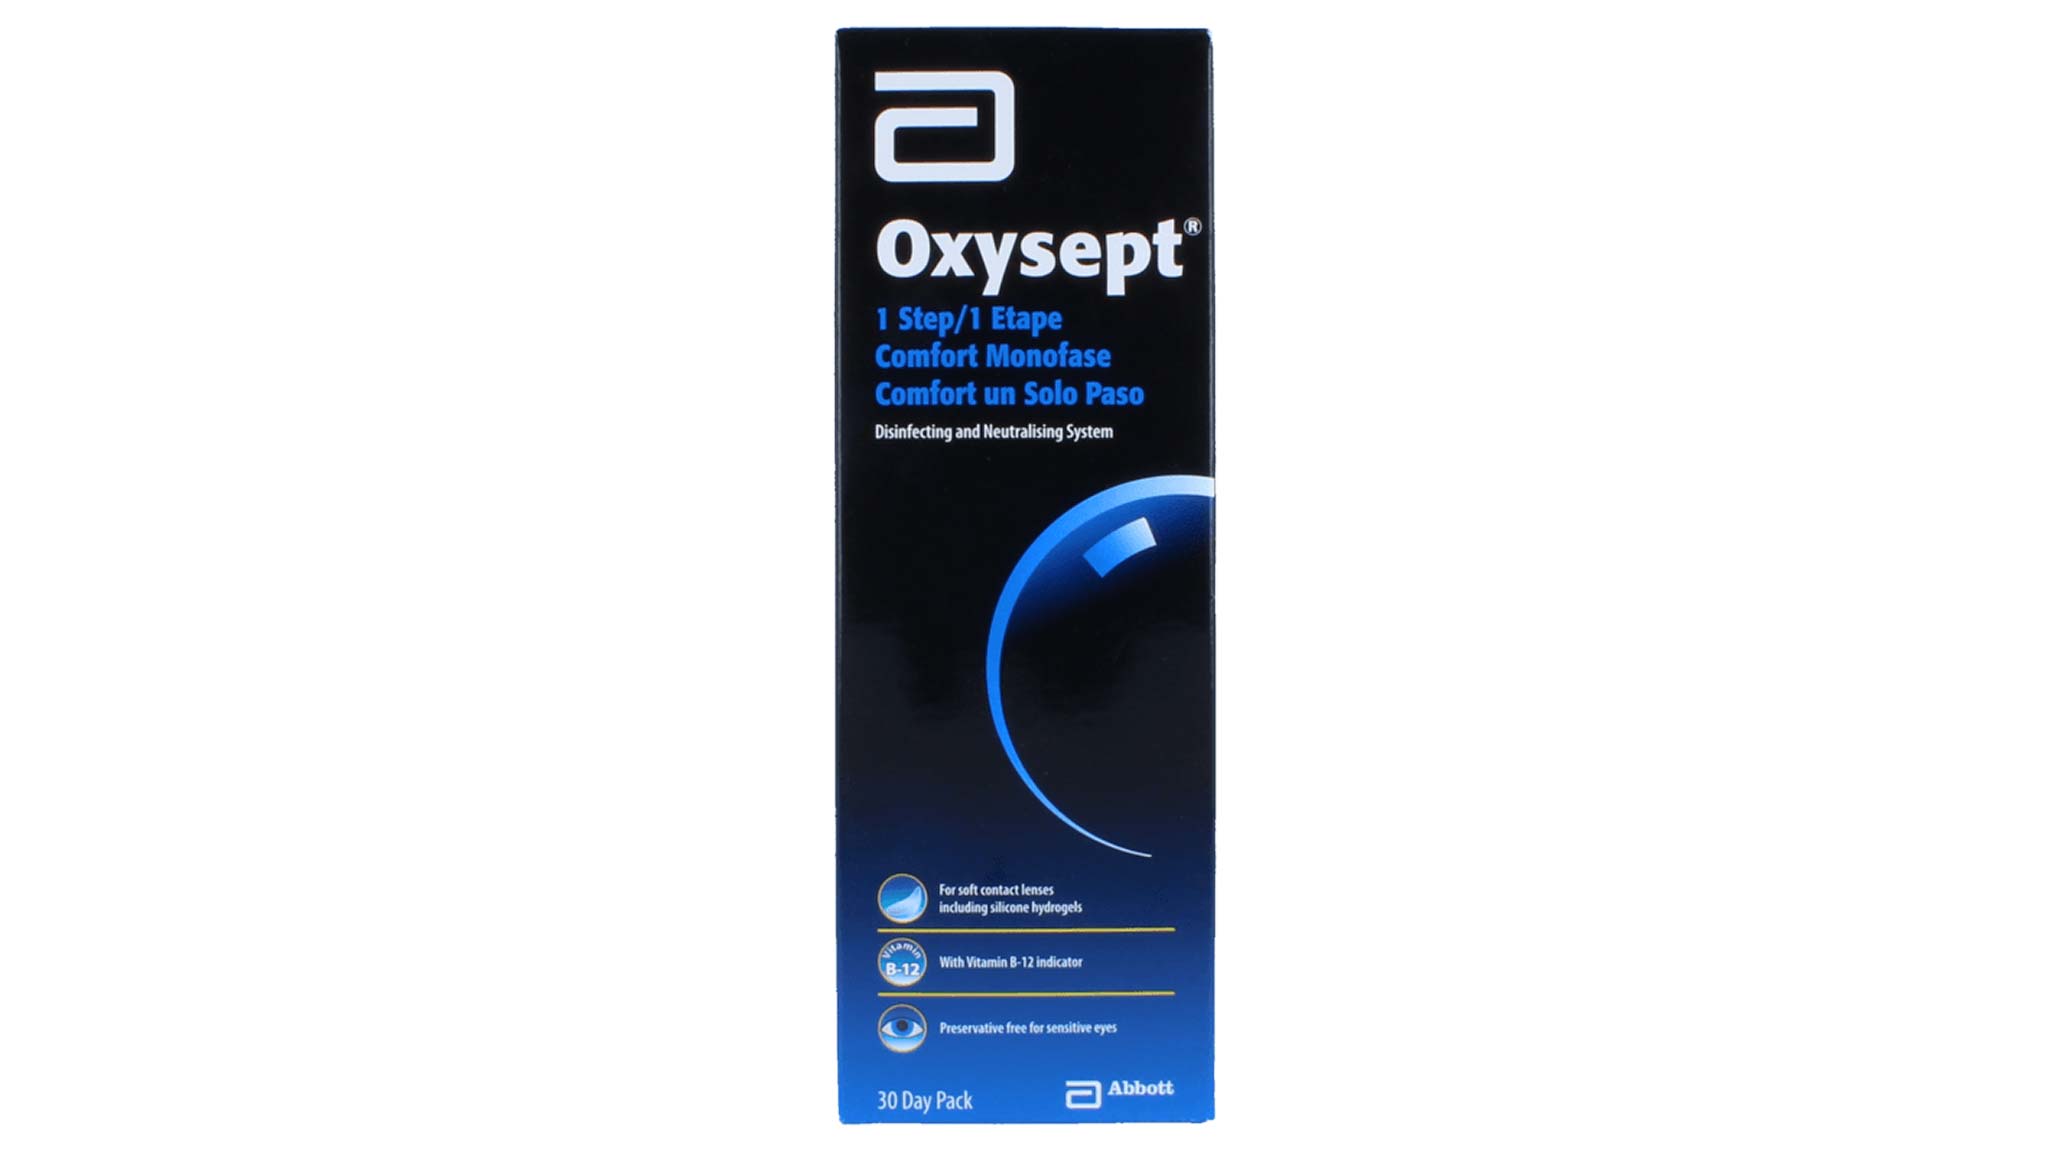 Oxysept Monofase soluzione